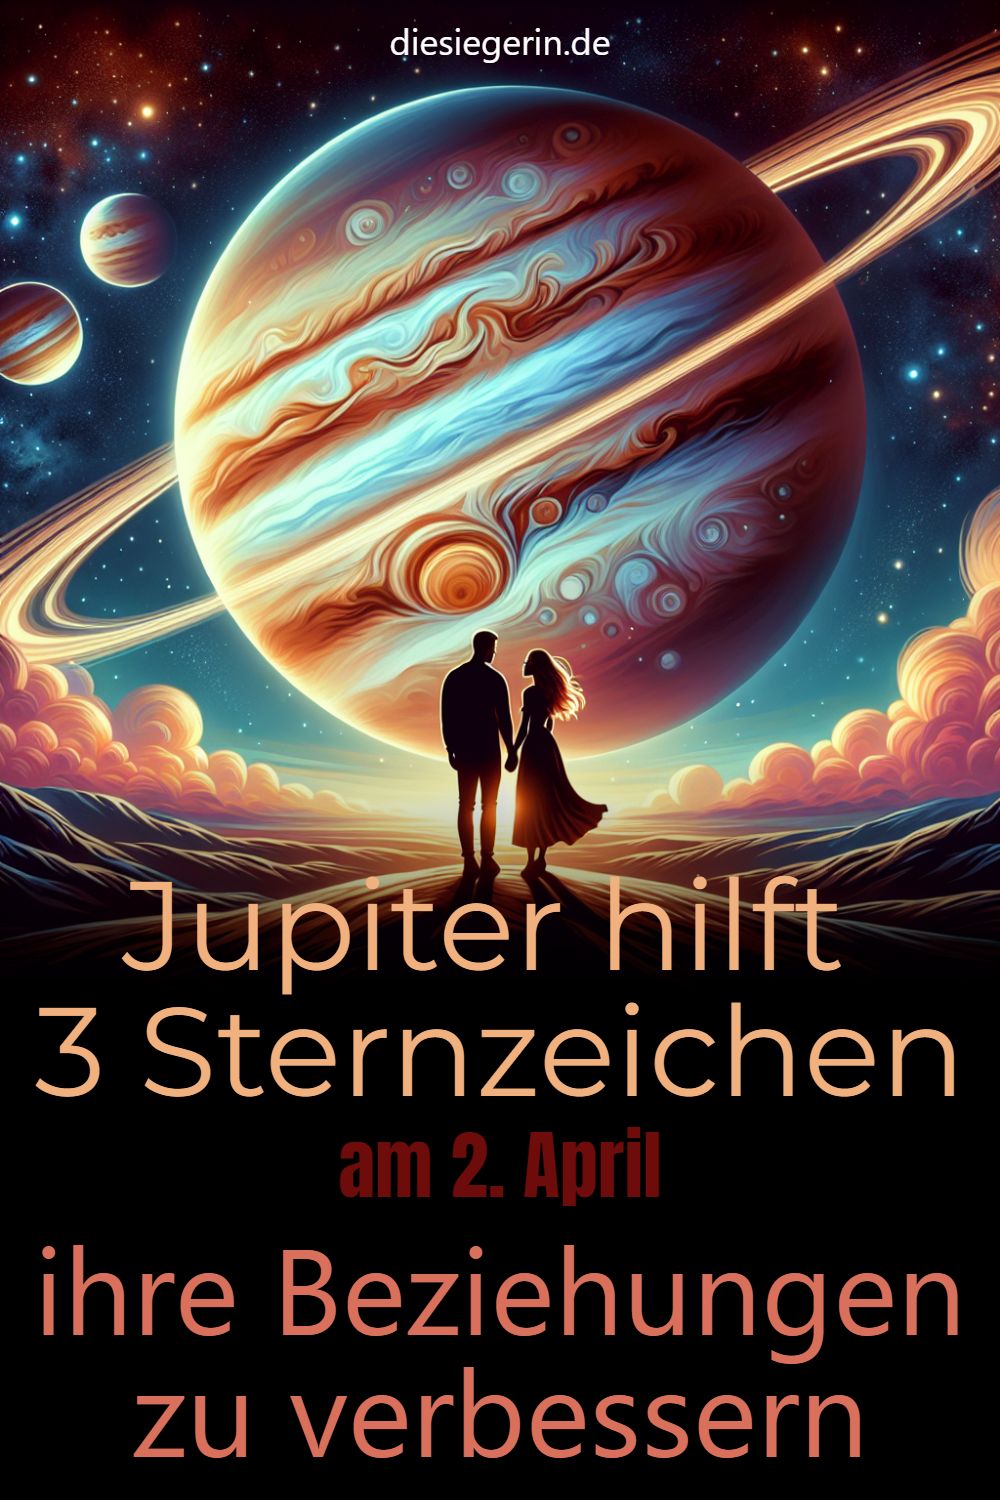 Jupiter hilft 3 Sternzeichen am 2. April ihre Beziehungen zu verbessern